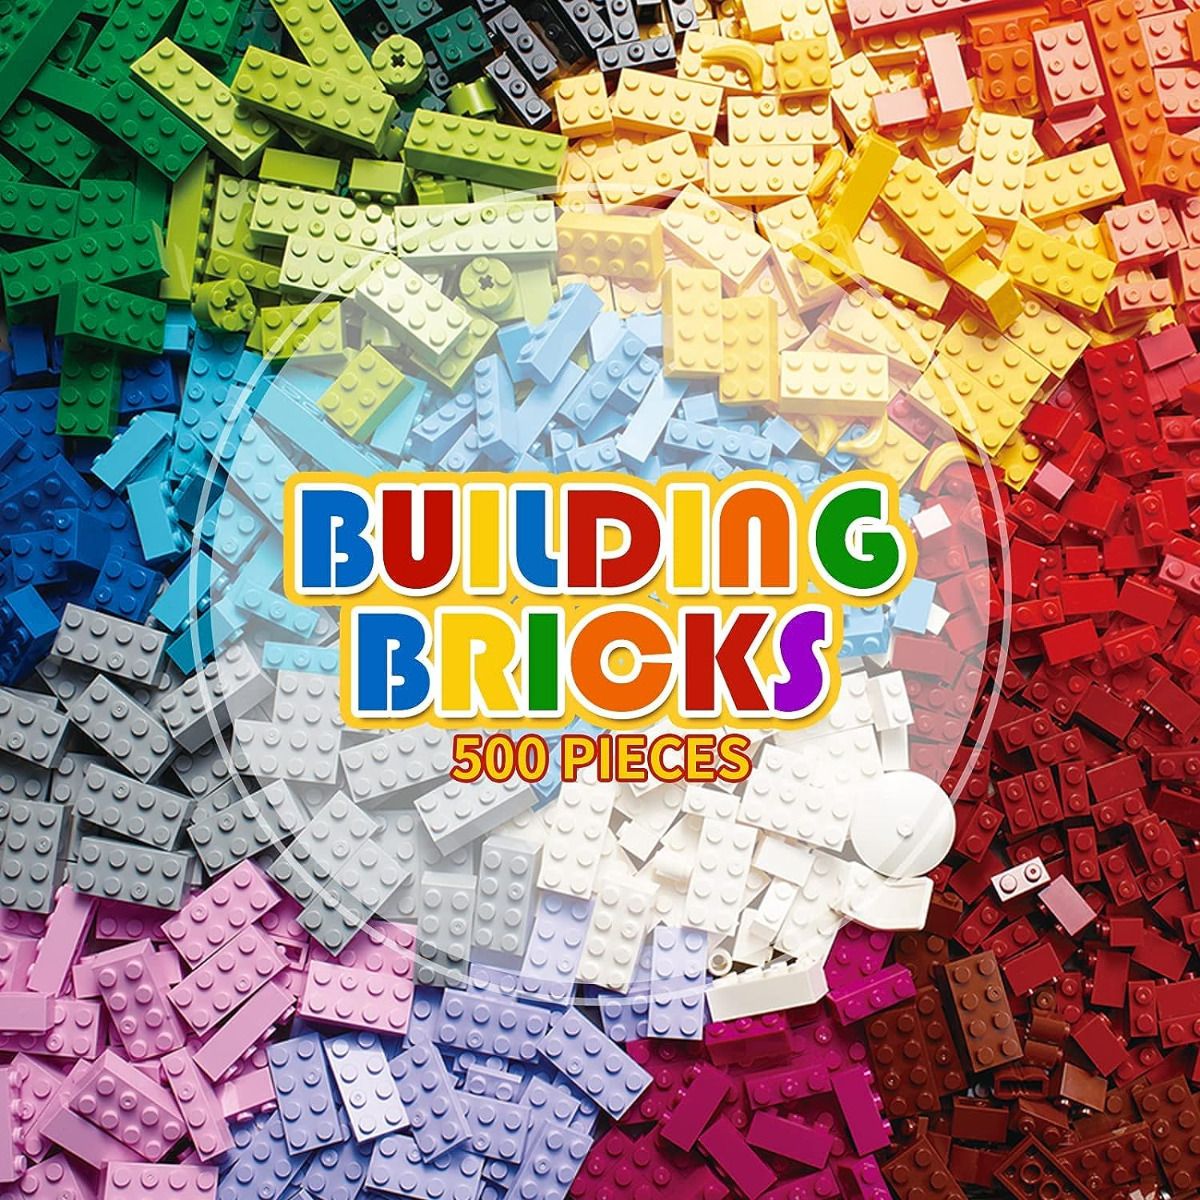 500 PCS Building Bricks Bundle